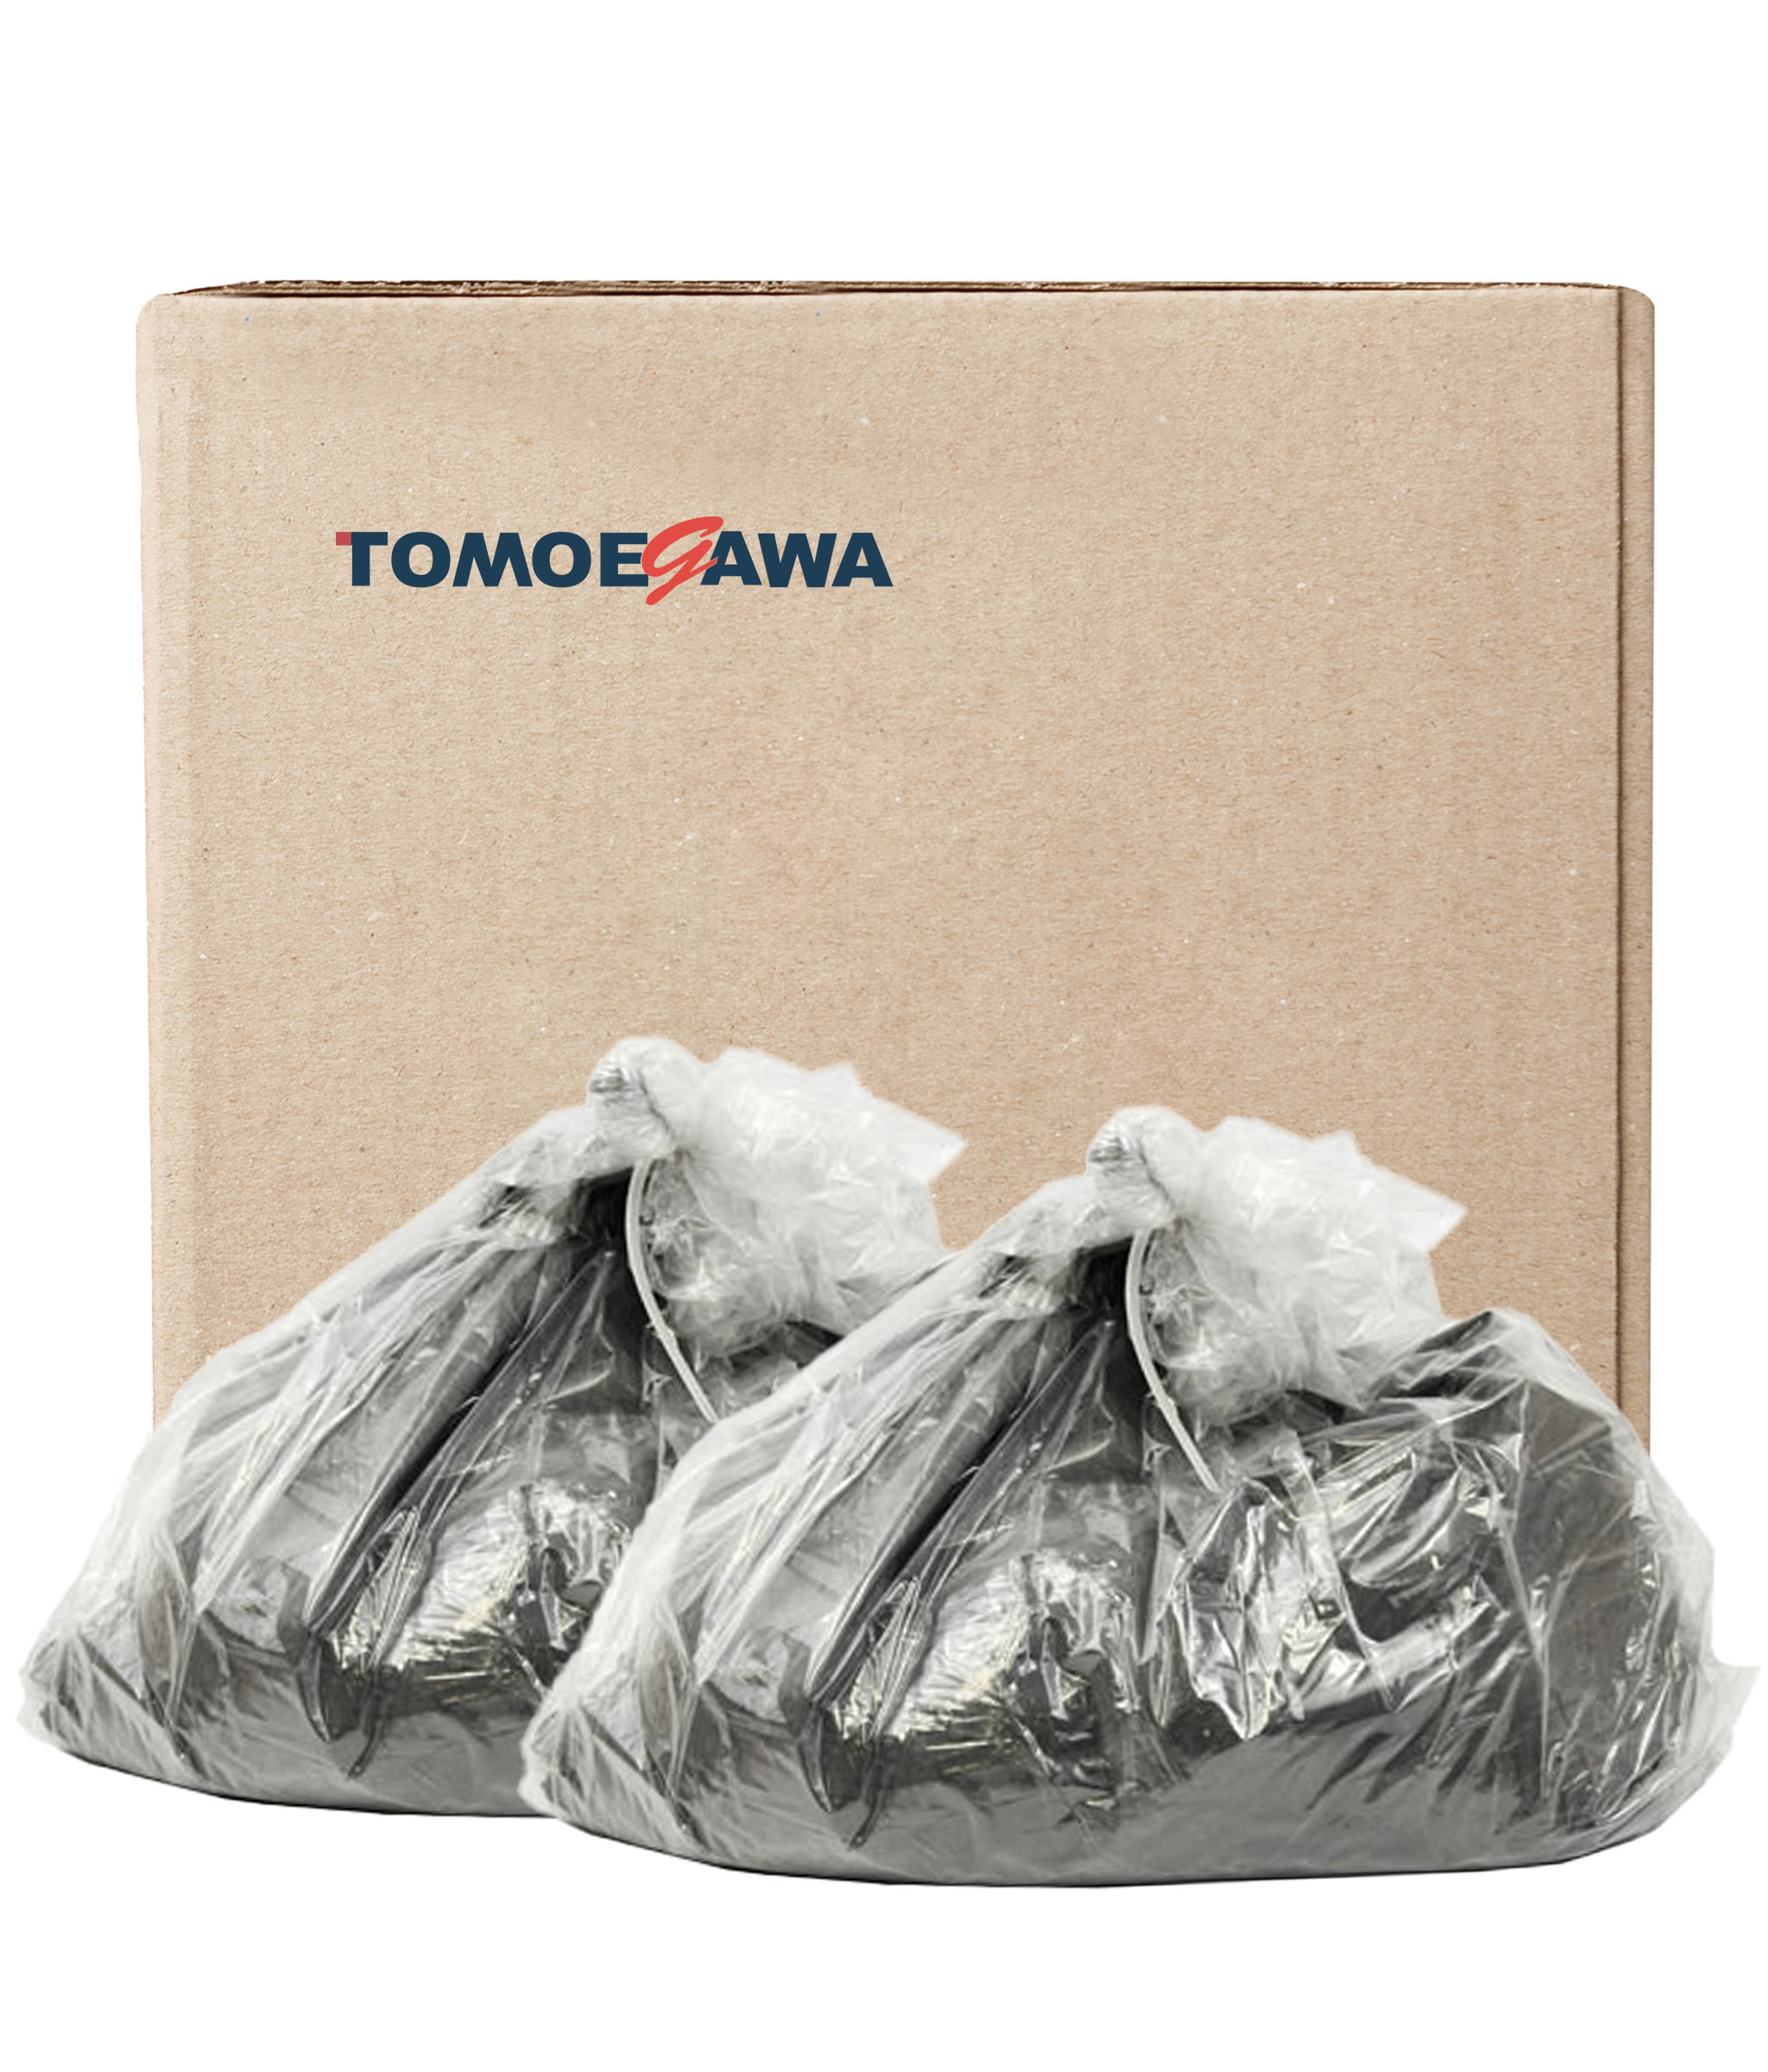 Тонер Tomoegawa для Lexmark MS310d/310dn/410d/410dn/MS810dn, тип LX-09, Bk, 2x10 кг, коробка